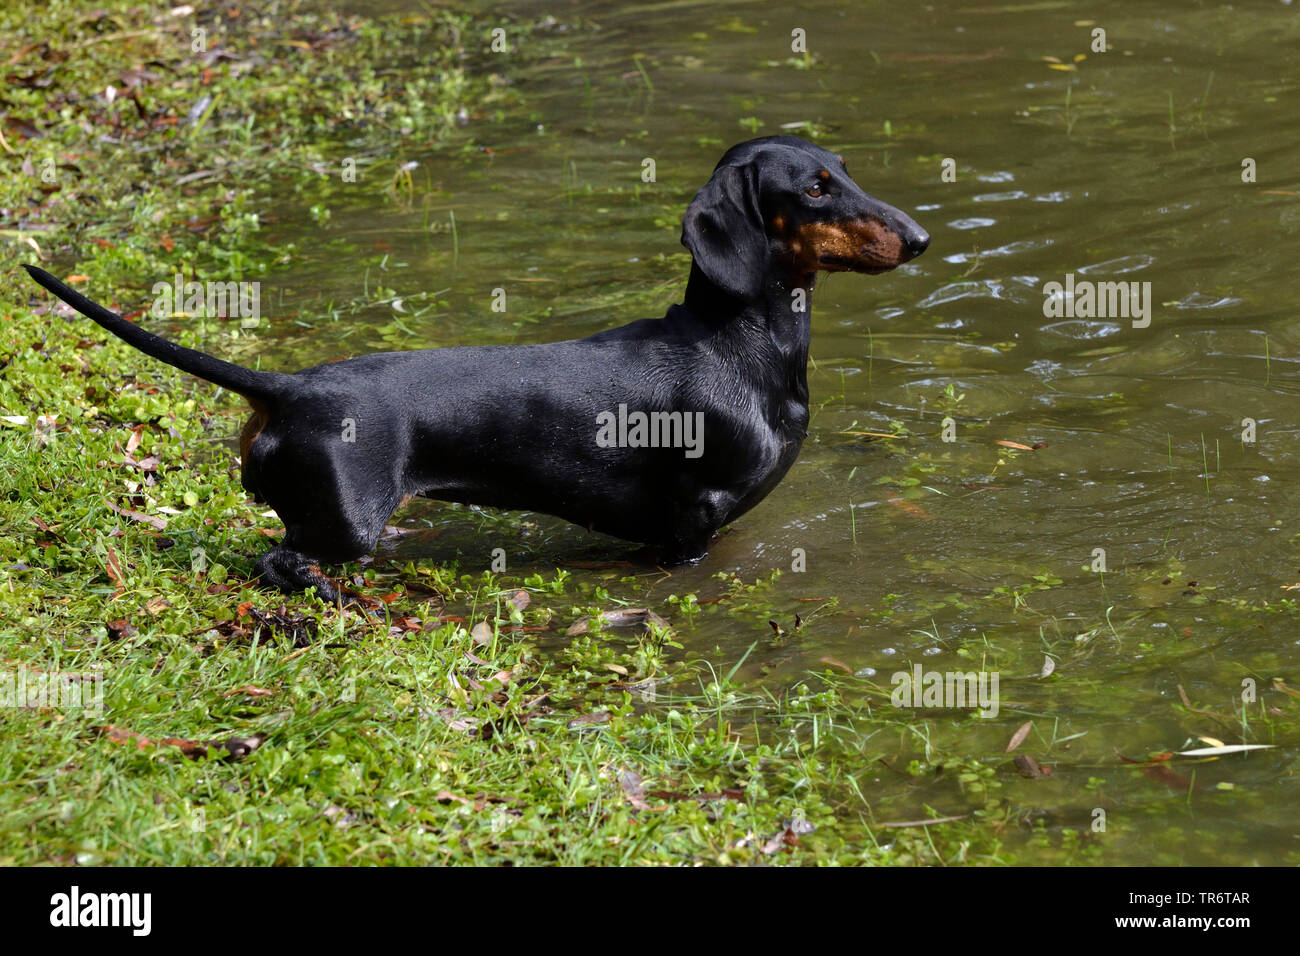 Kurzhaarige Dackel, Kurzhaarige wurst Hund, Haushund (Canis lupus f. familiaris), aufmerksam im flachen Wasser stehend, Deutschland Stockfoto